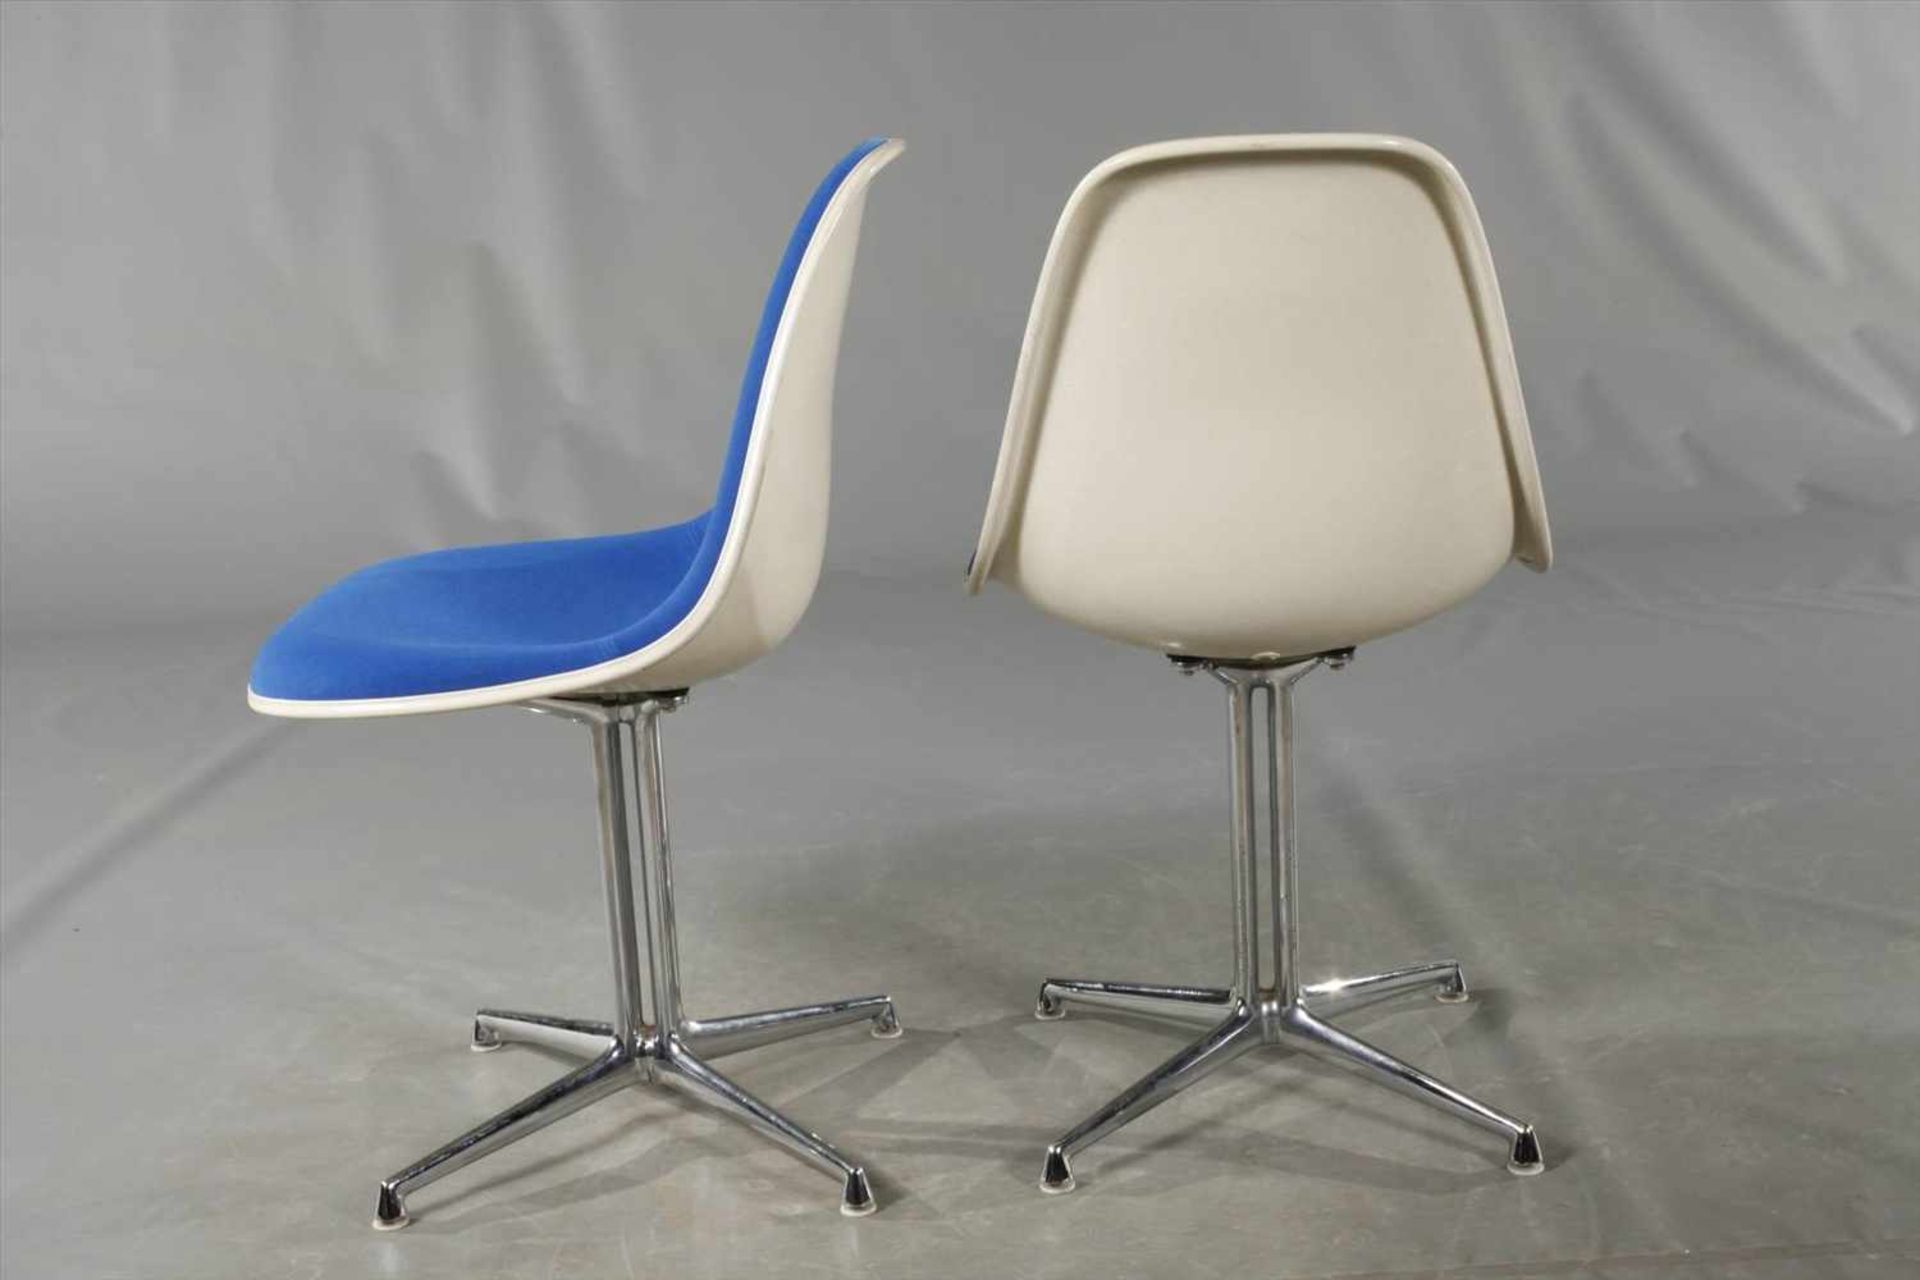 Vier Stühle "Lafonda" Charles & Ray Eames Entwurf 1961, Herstellung Vitra Weil am Rhein, Sitzschalen - Bild 5 aus 7